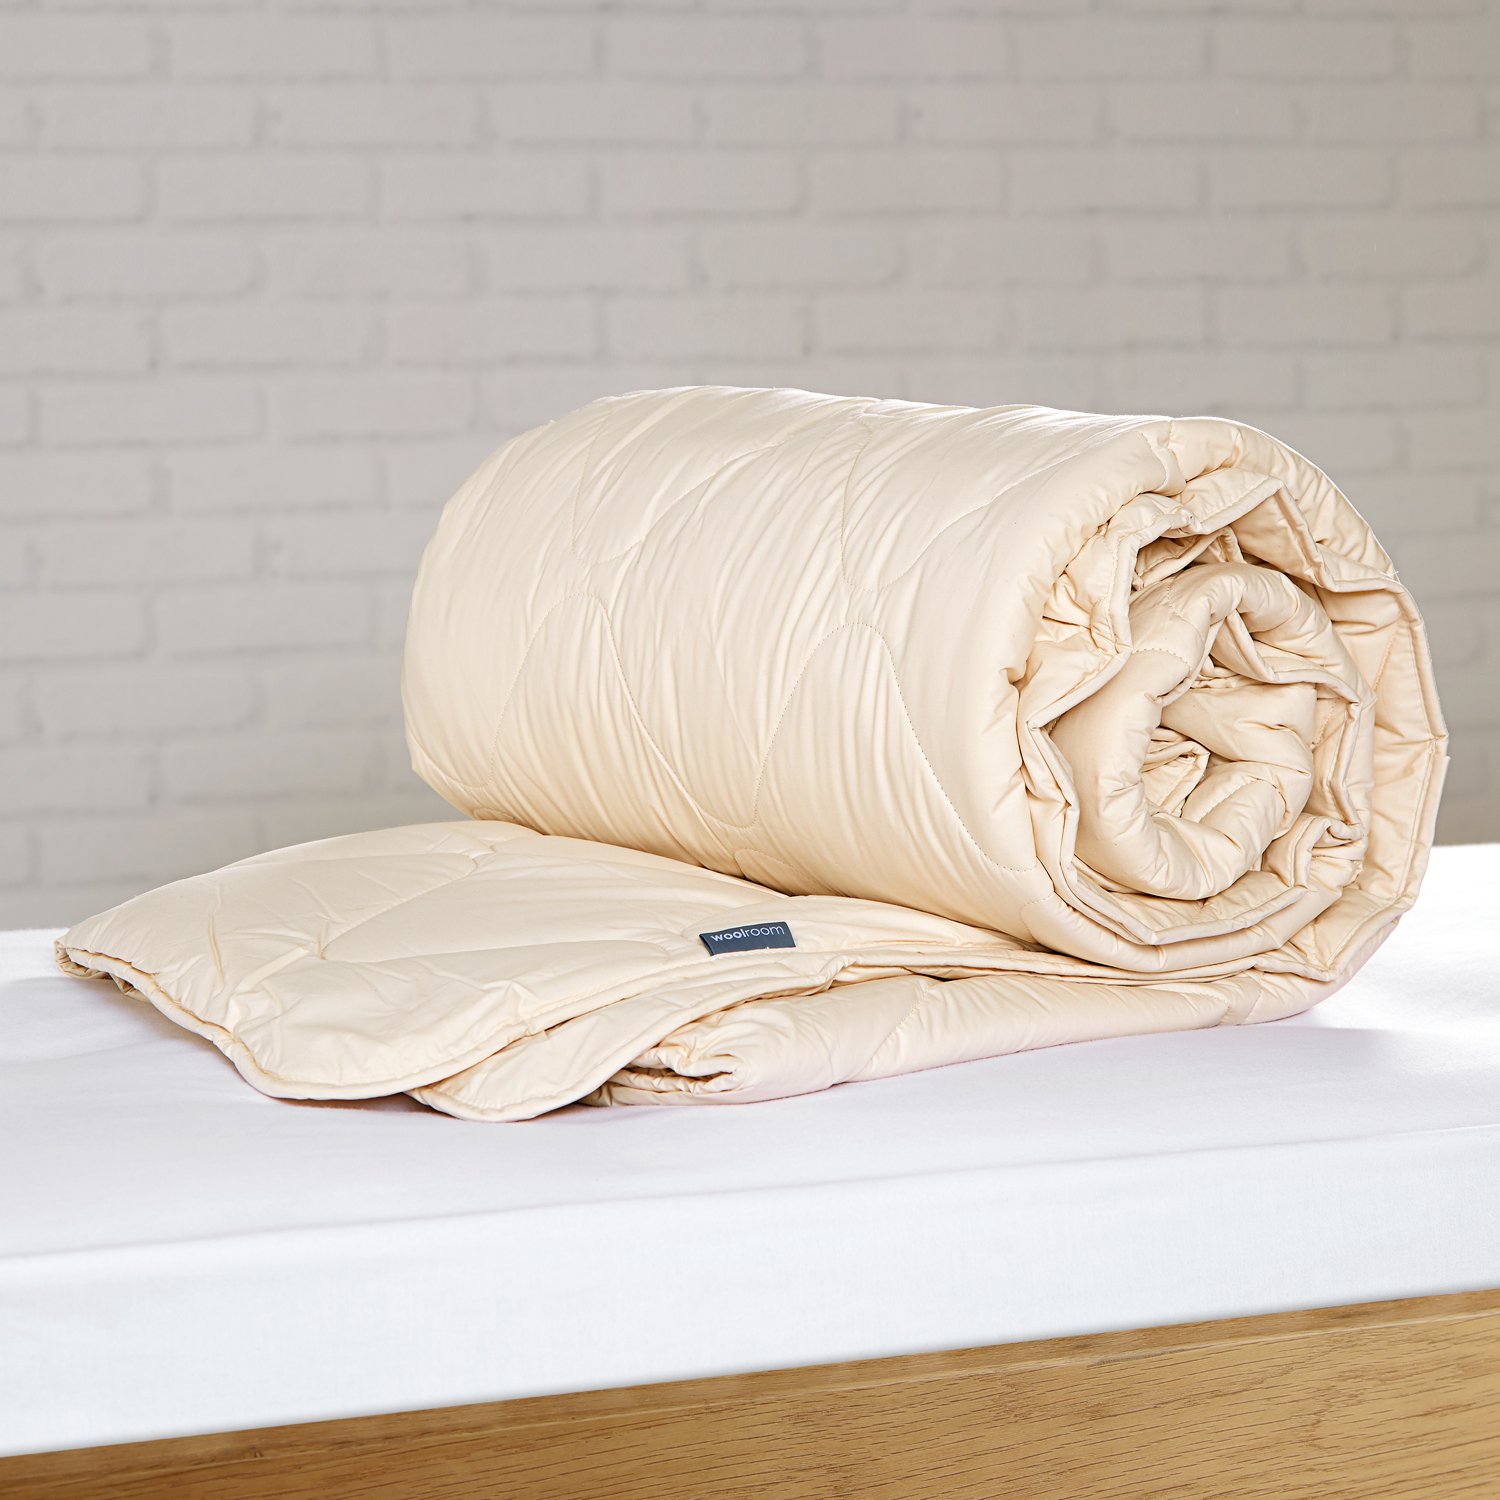 Suite Sleep Washable Wool Comforter Full/Queen